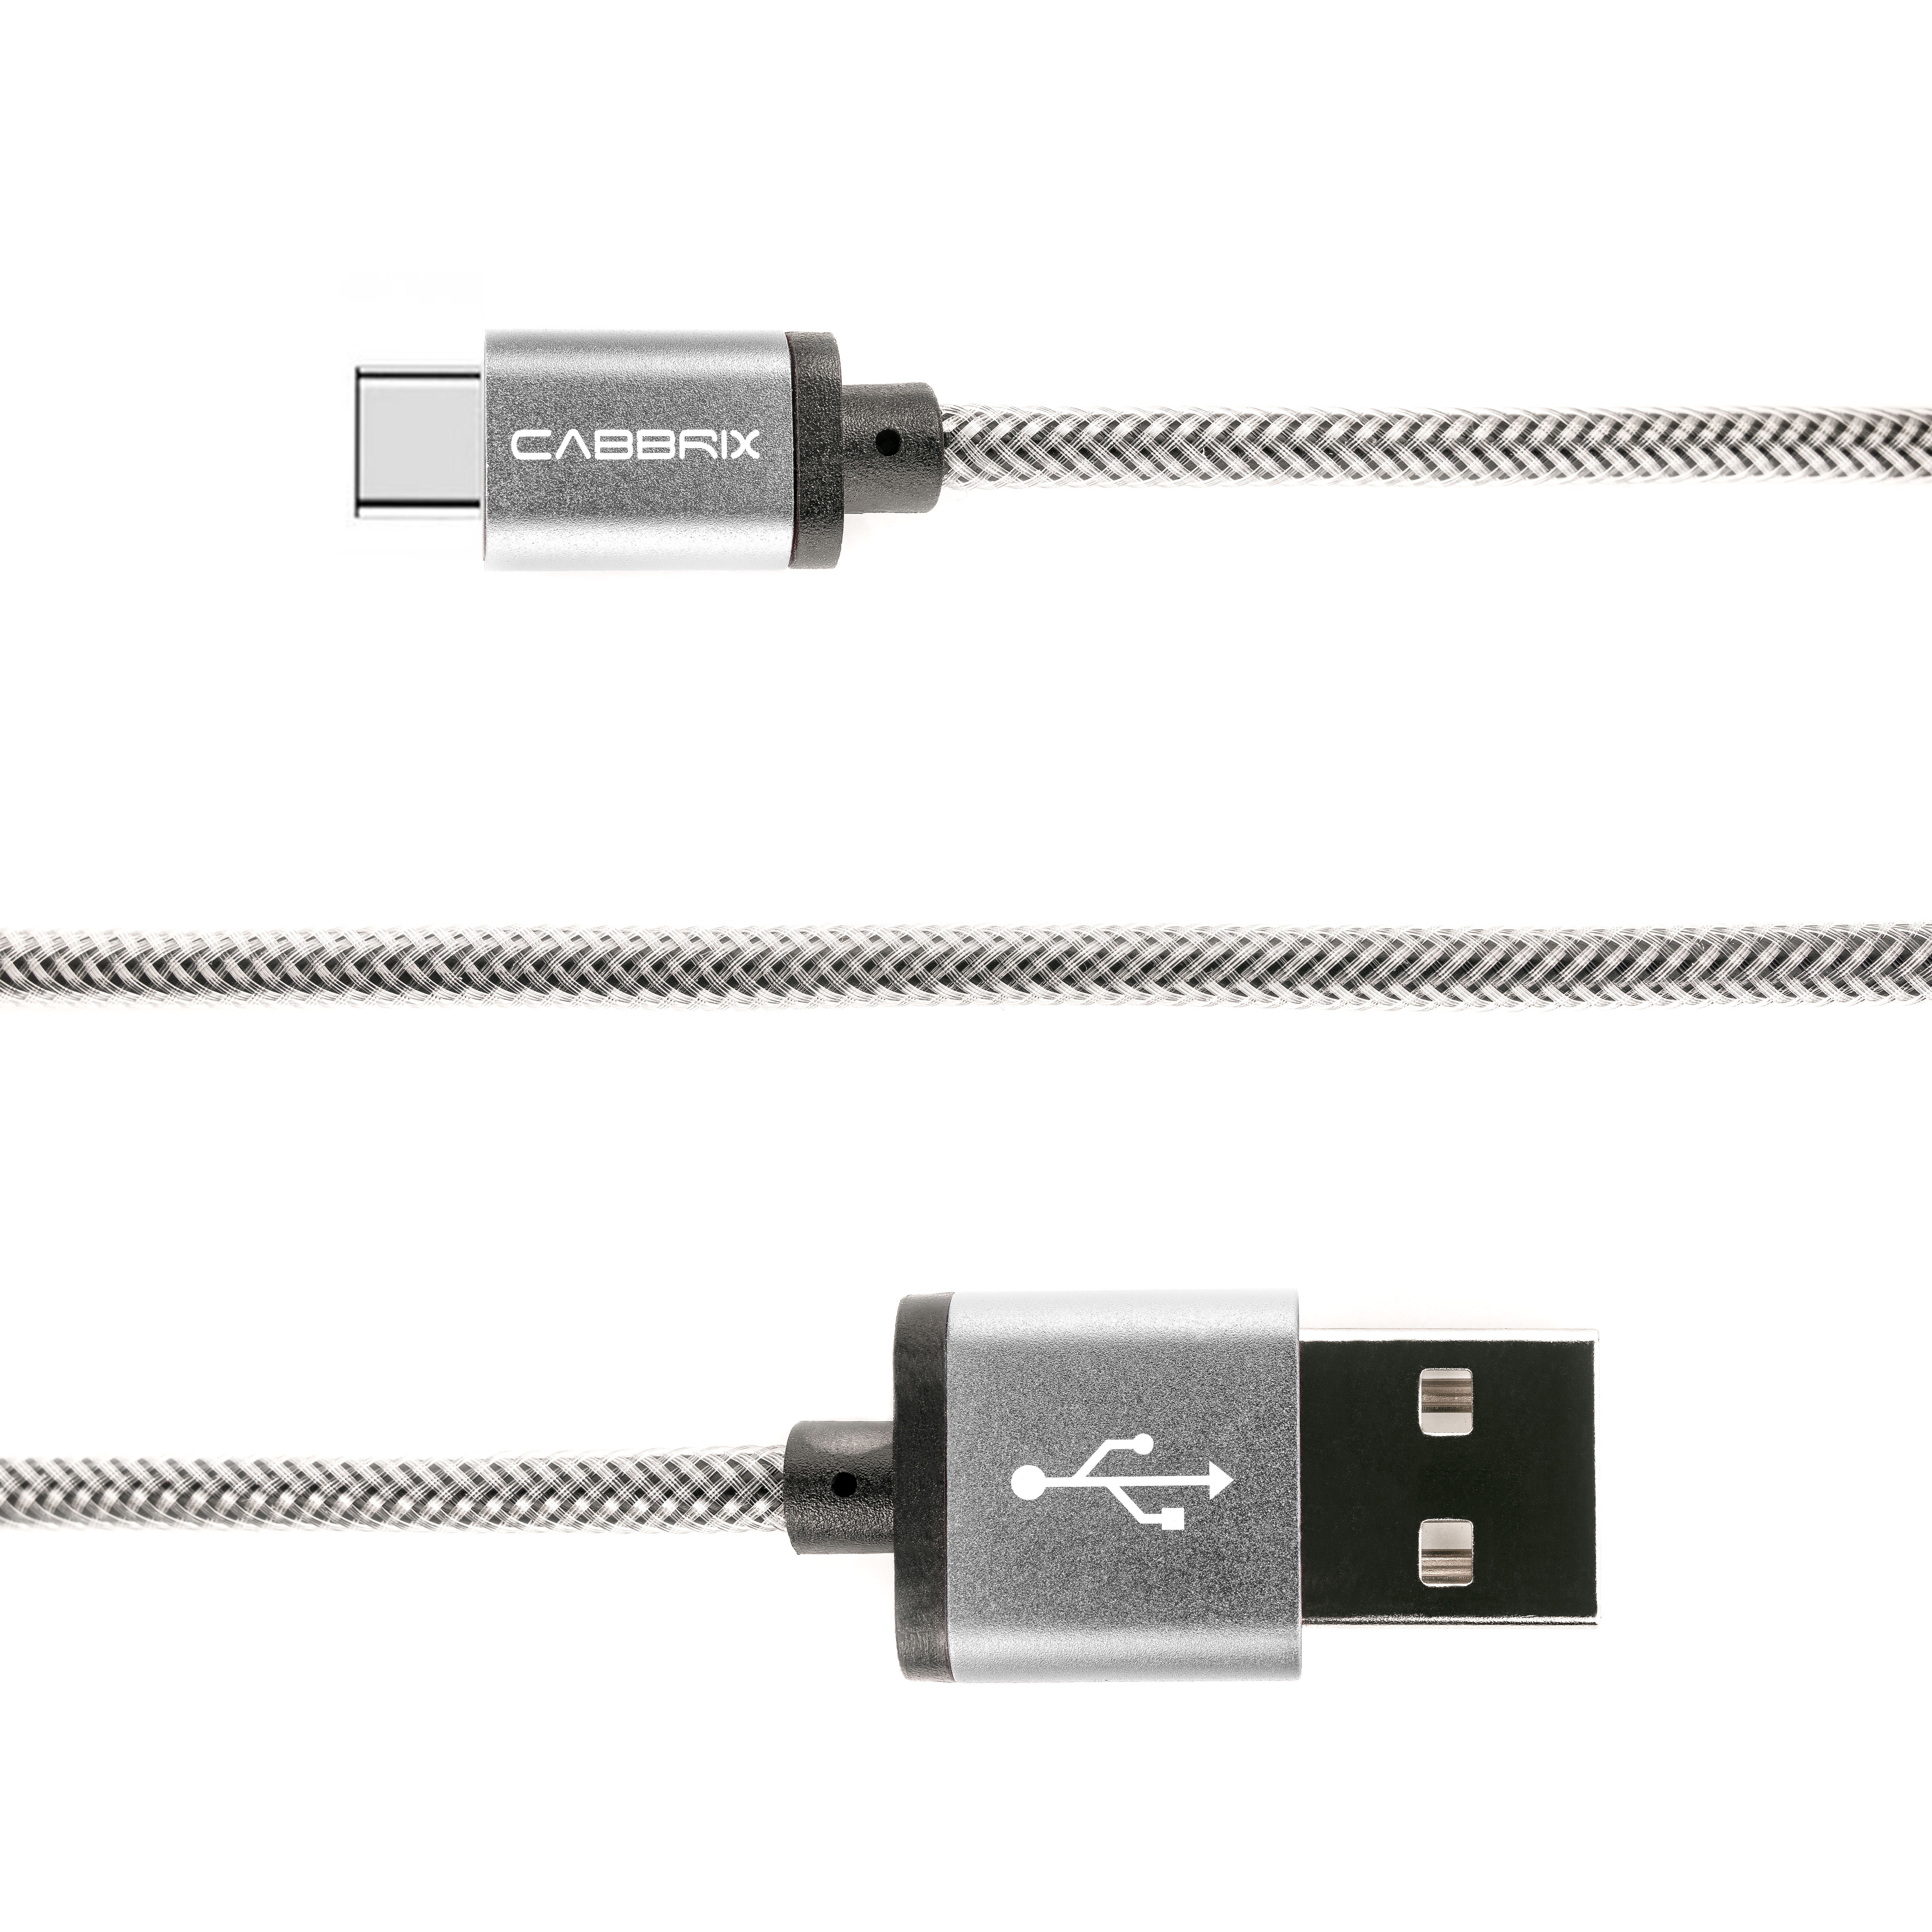 CABBRIX Smartphone-Kabel, USB-C Typ, USB-C Typ (1,5 Meter / 150 cm), USB-C  Type Kabel auf USB Schwarz 1,5m Nylon Steckergehäuse aus Aluminium /  Aufladen und Synchronisieren der Daten Ladekabel für Samsung /